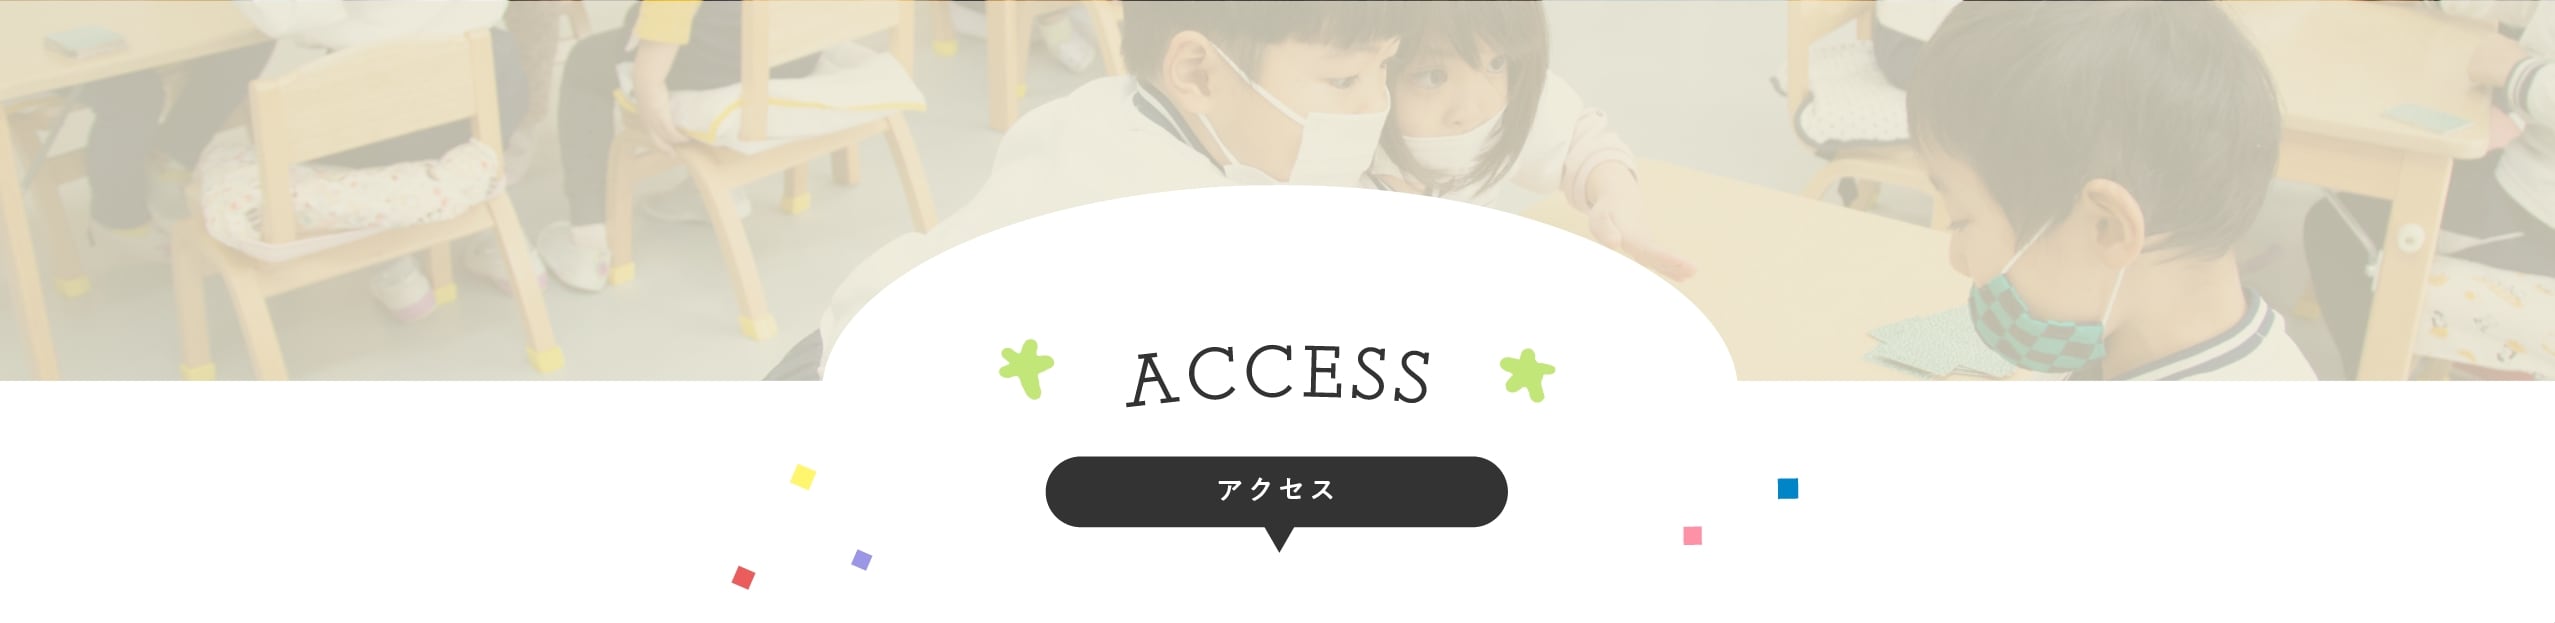 ACCESS -アクセス-